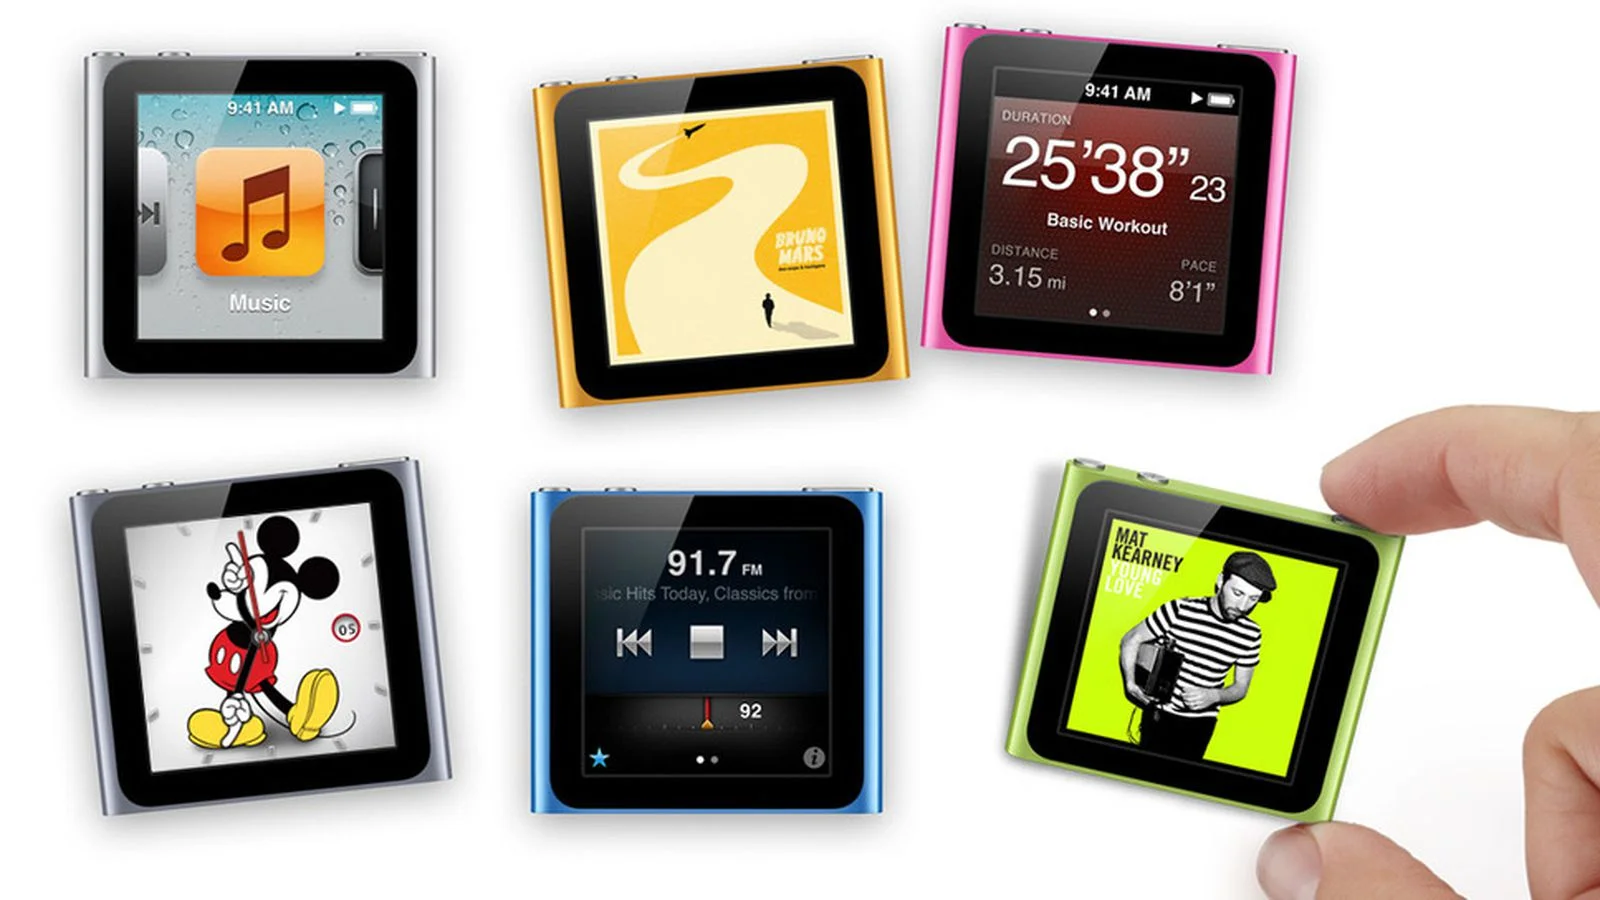 С Днем Рождения, iPod! 16 лет эволюции лучшего MP3 плеера - фото 14